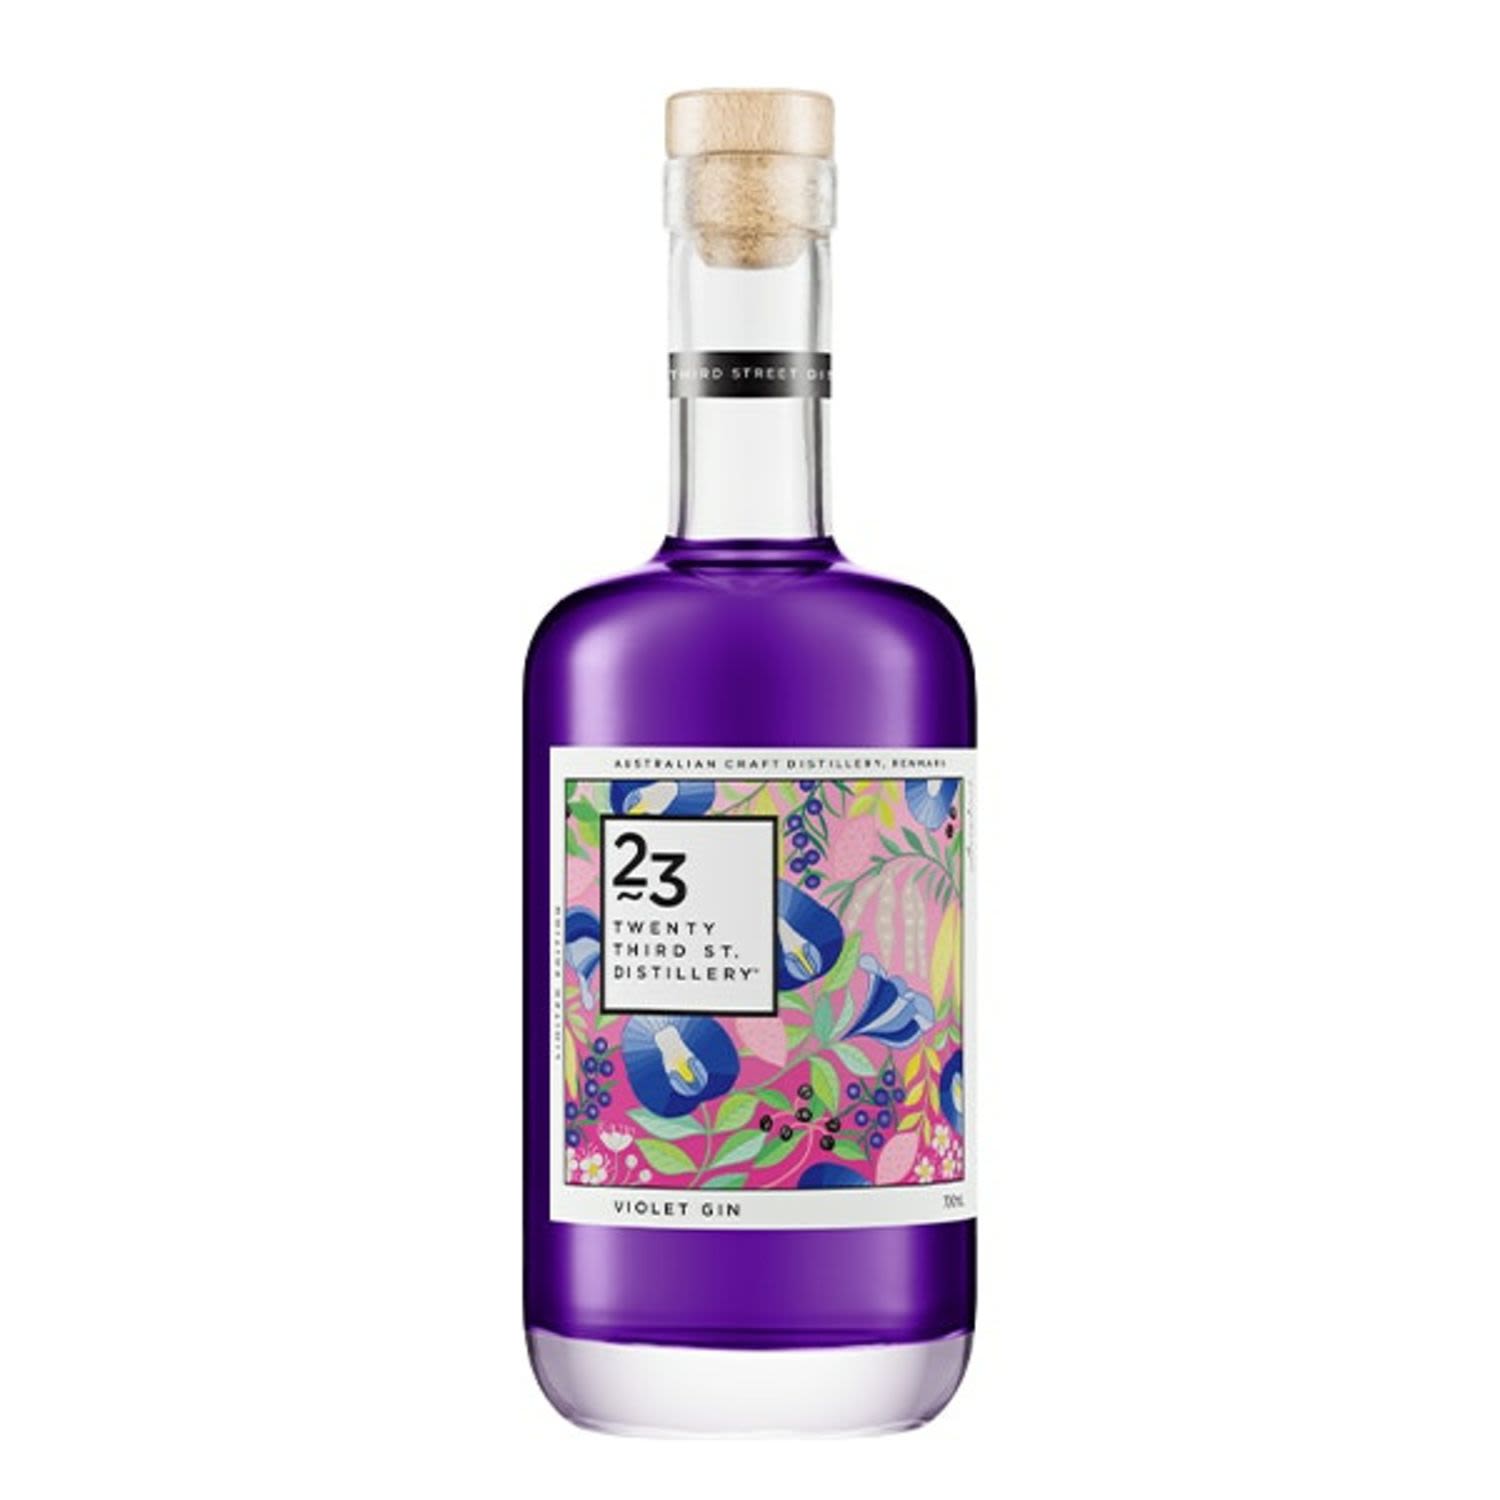 23rd Street Violet Gin 700mL Bottle